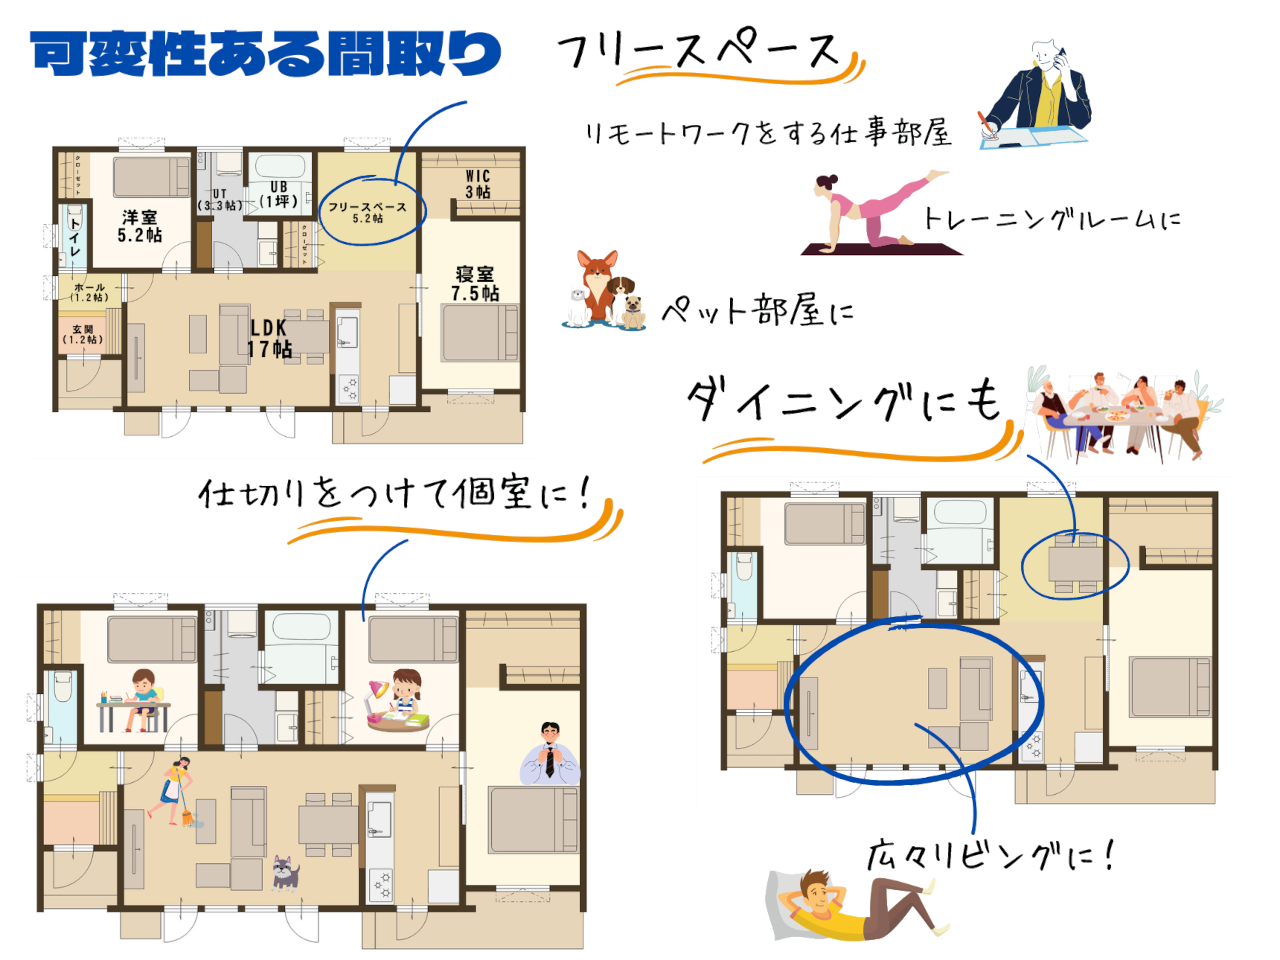 音更町柳町北区にて新しく分譲住宅を販売いたします。